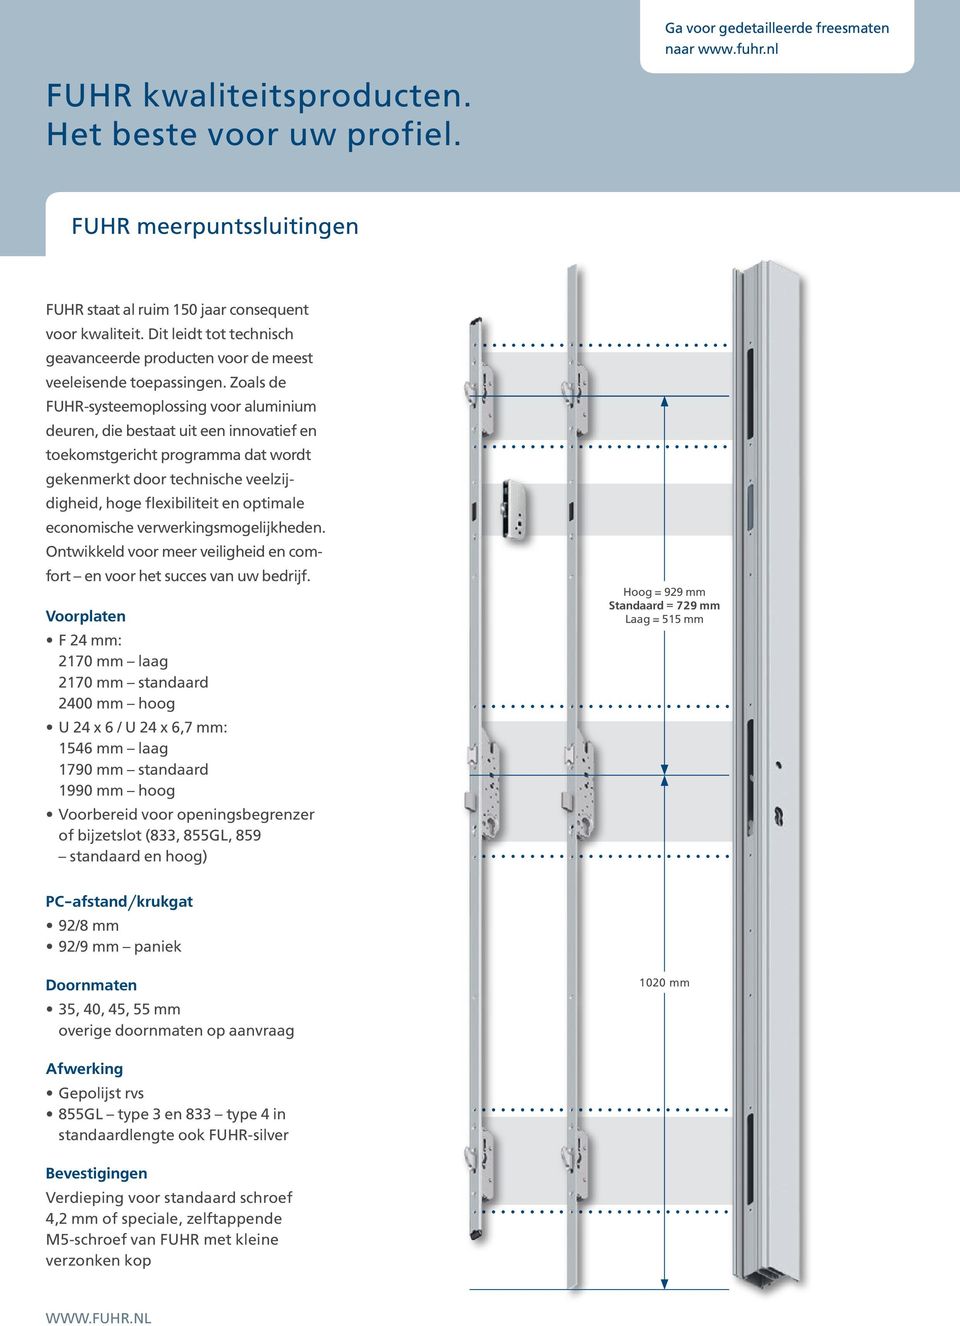 Zoals de FUHR-systeemoplossing voor aluminium deuren, die bestaat uit een innovatief en toekomstgericht programma dat wordt gekenmerkt door technische veelzijdigheid, hoge flexibiliteit en optimale